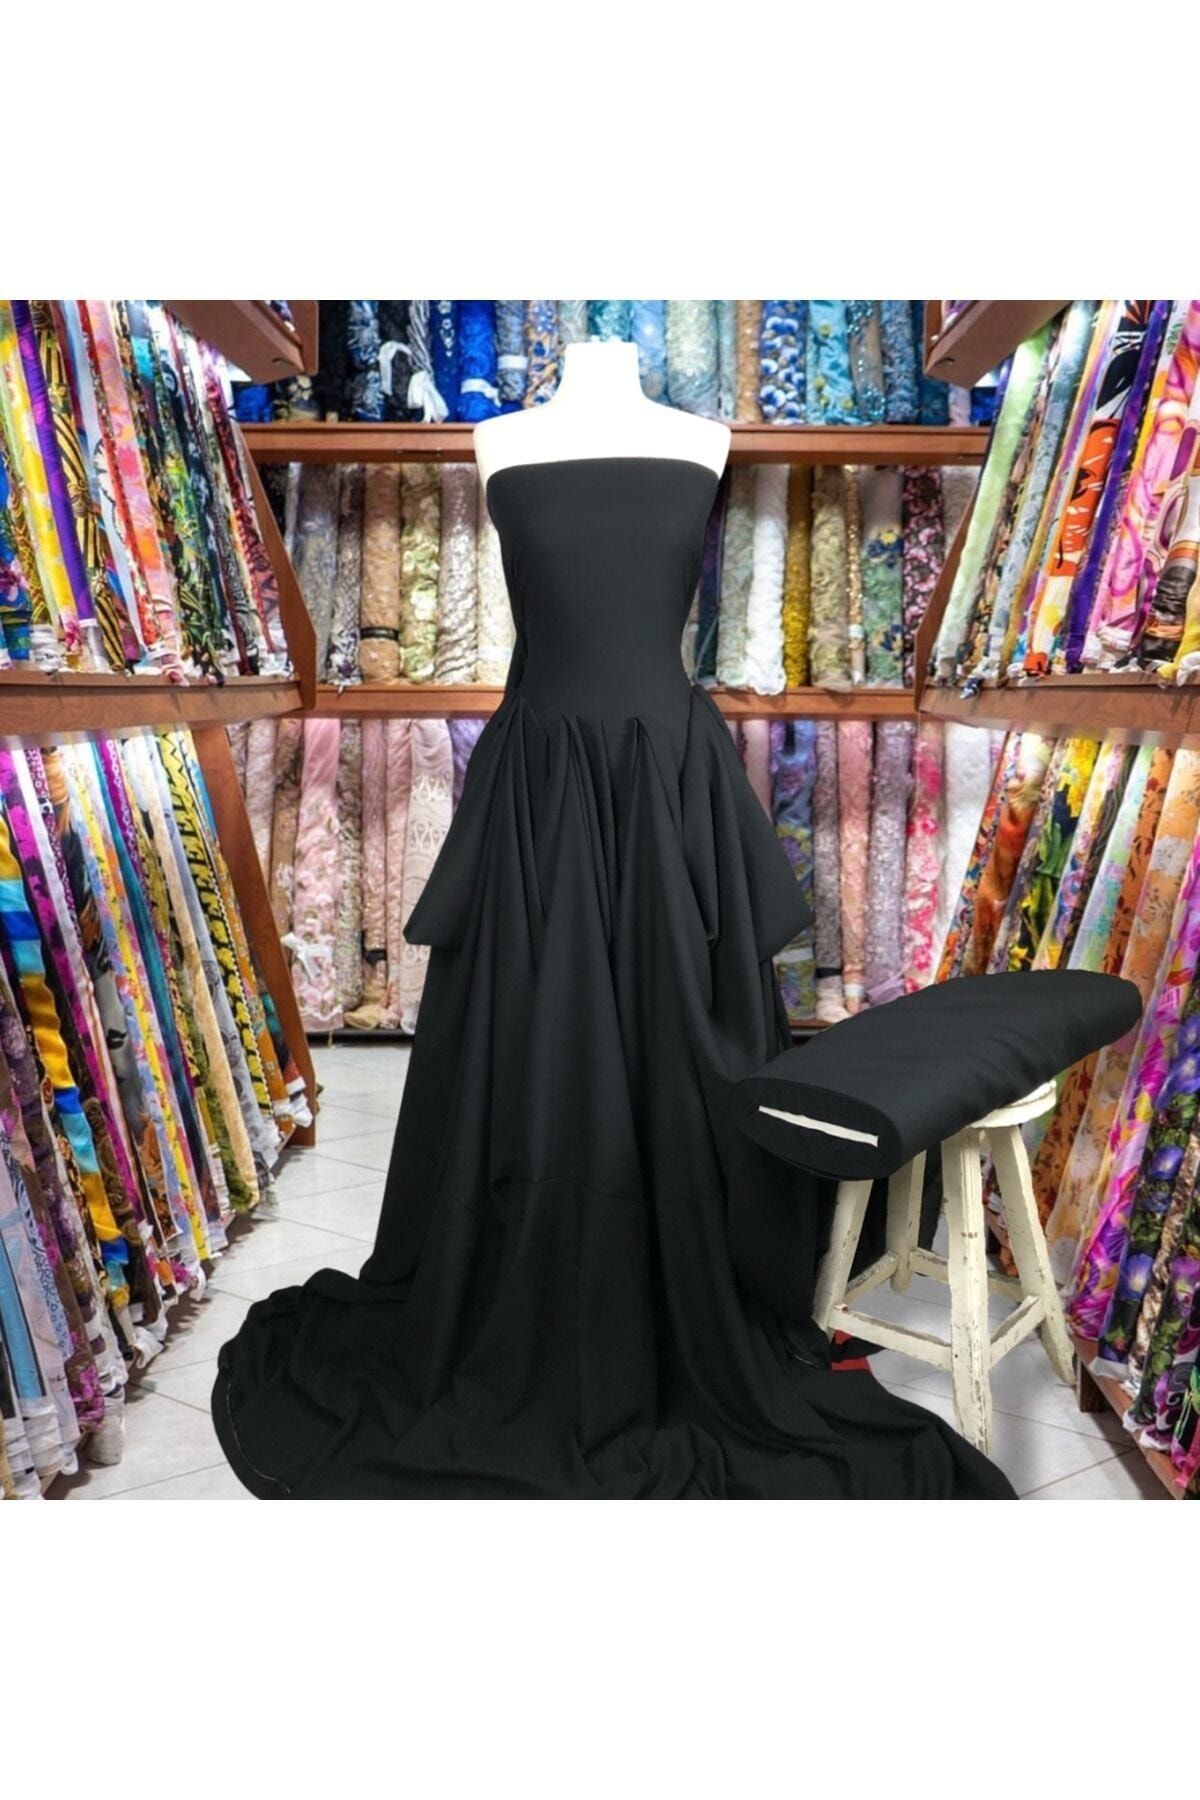 Kumaş Kervanı Doğal Düz Siyah Eteklik Elbiselik Şalvarlık Çift En (150 CM) Viskon Kumaş